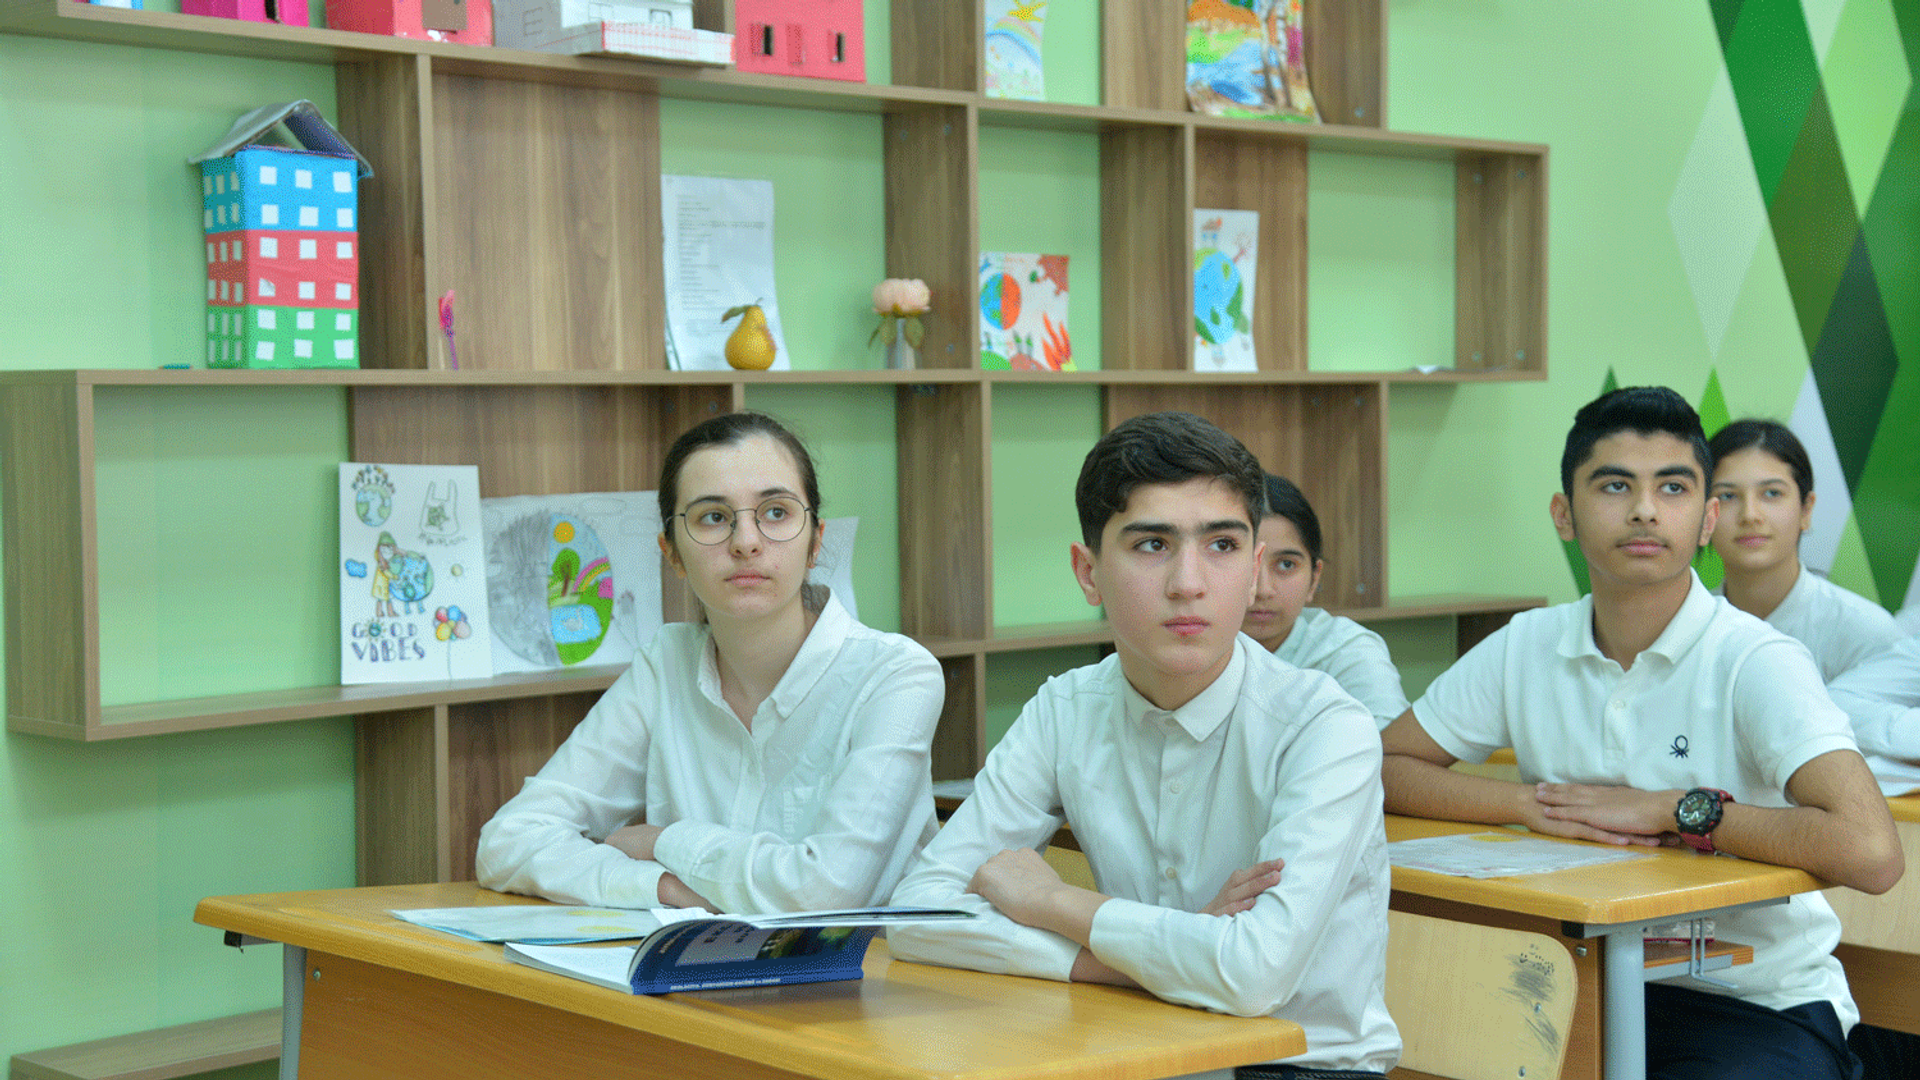 В одной из школ, фото из архива - Sputnik Азербайджан, 1920, 20.02.2021